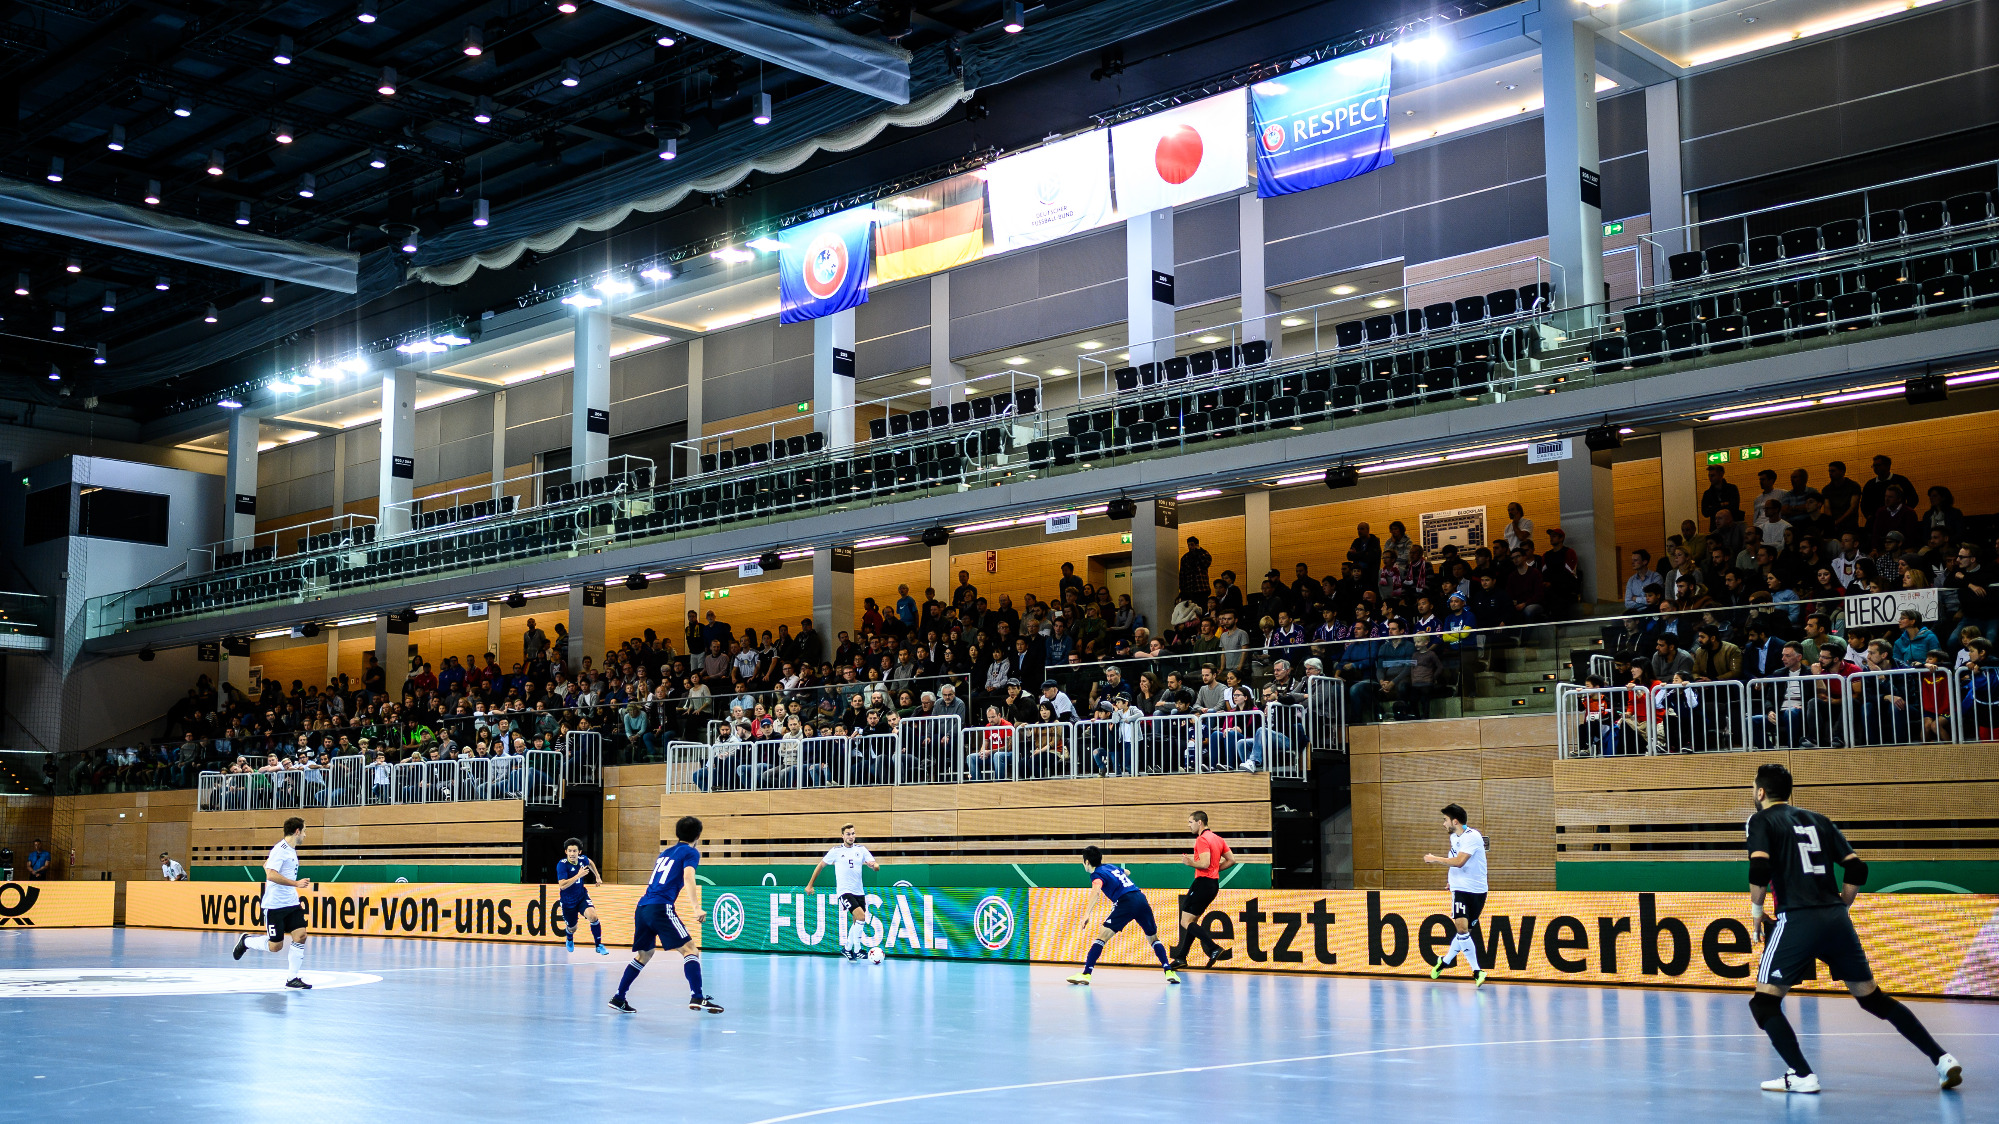 Kartenvorverkauf für Futsal-Länderspiele am 18./19